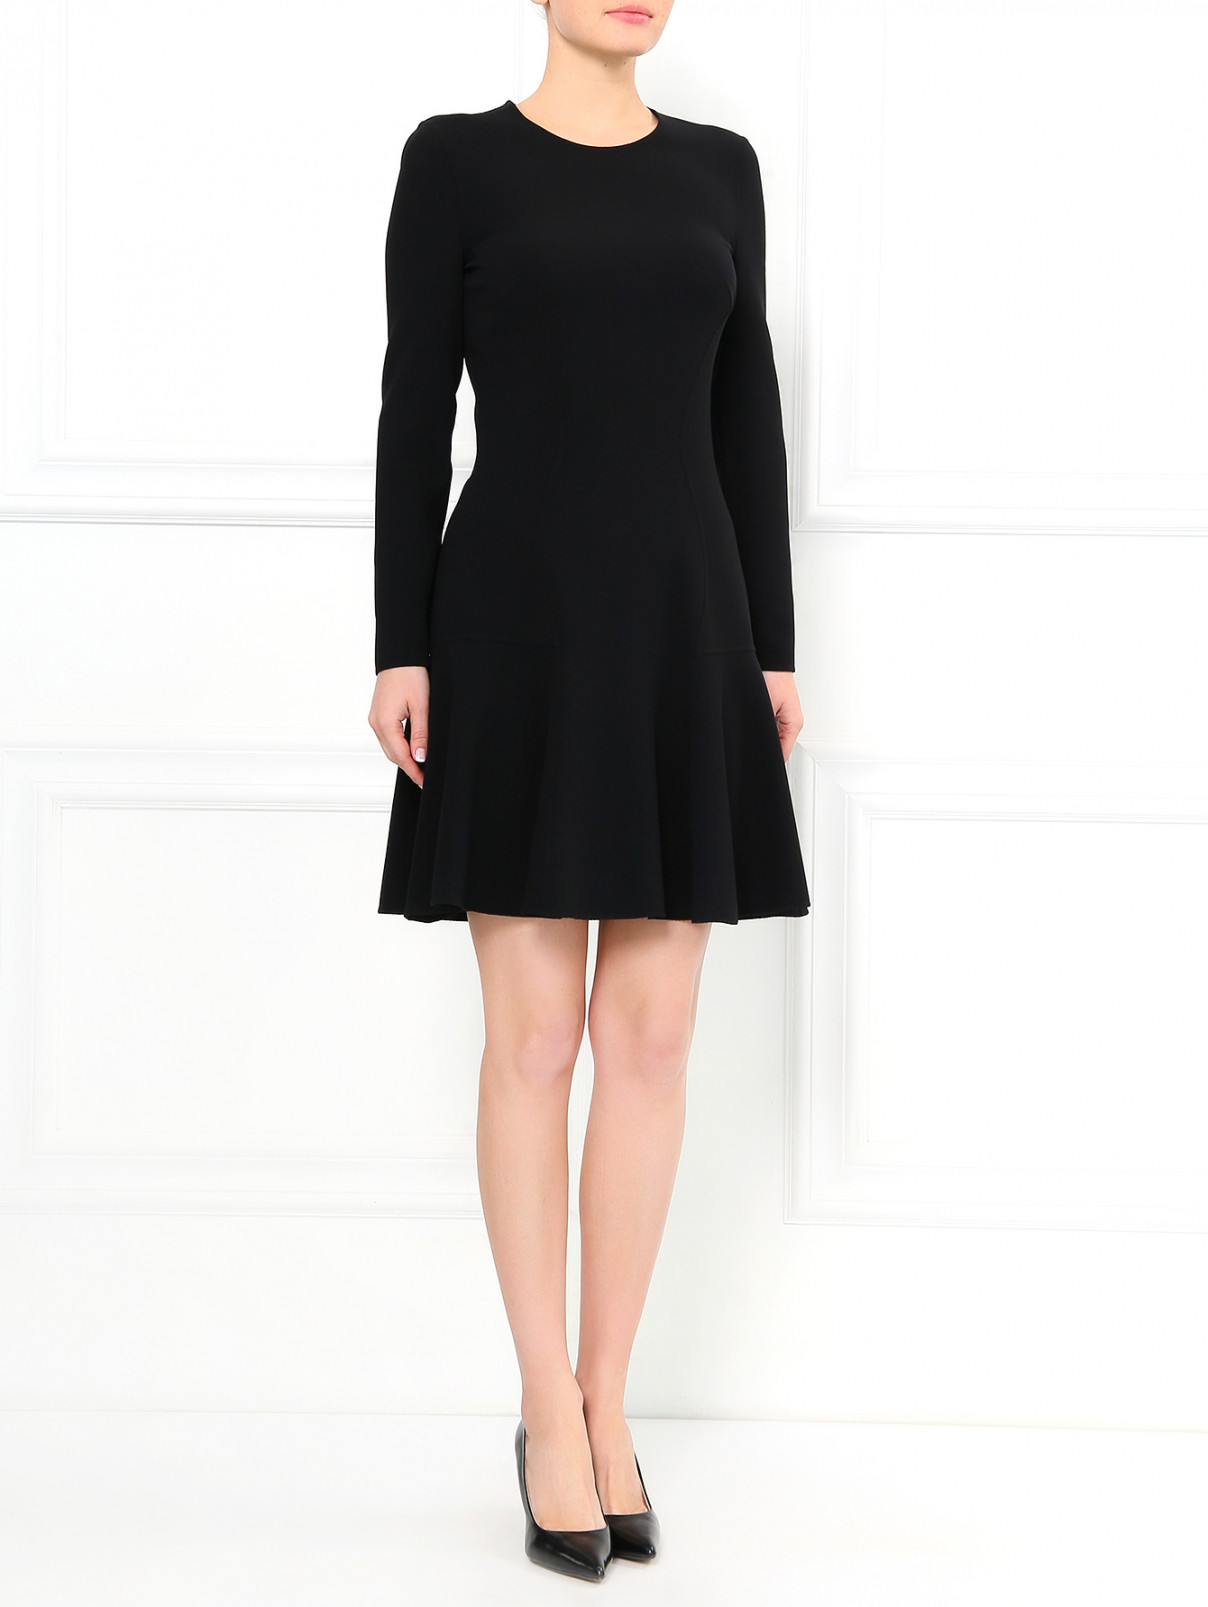 Платье-футляр из шерсти Michael Kors  –  Модель Общий вид  – Цвет:  Черный